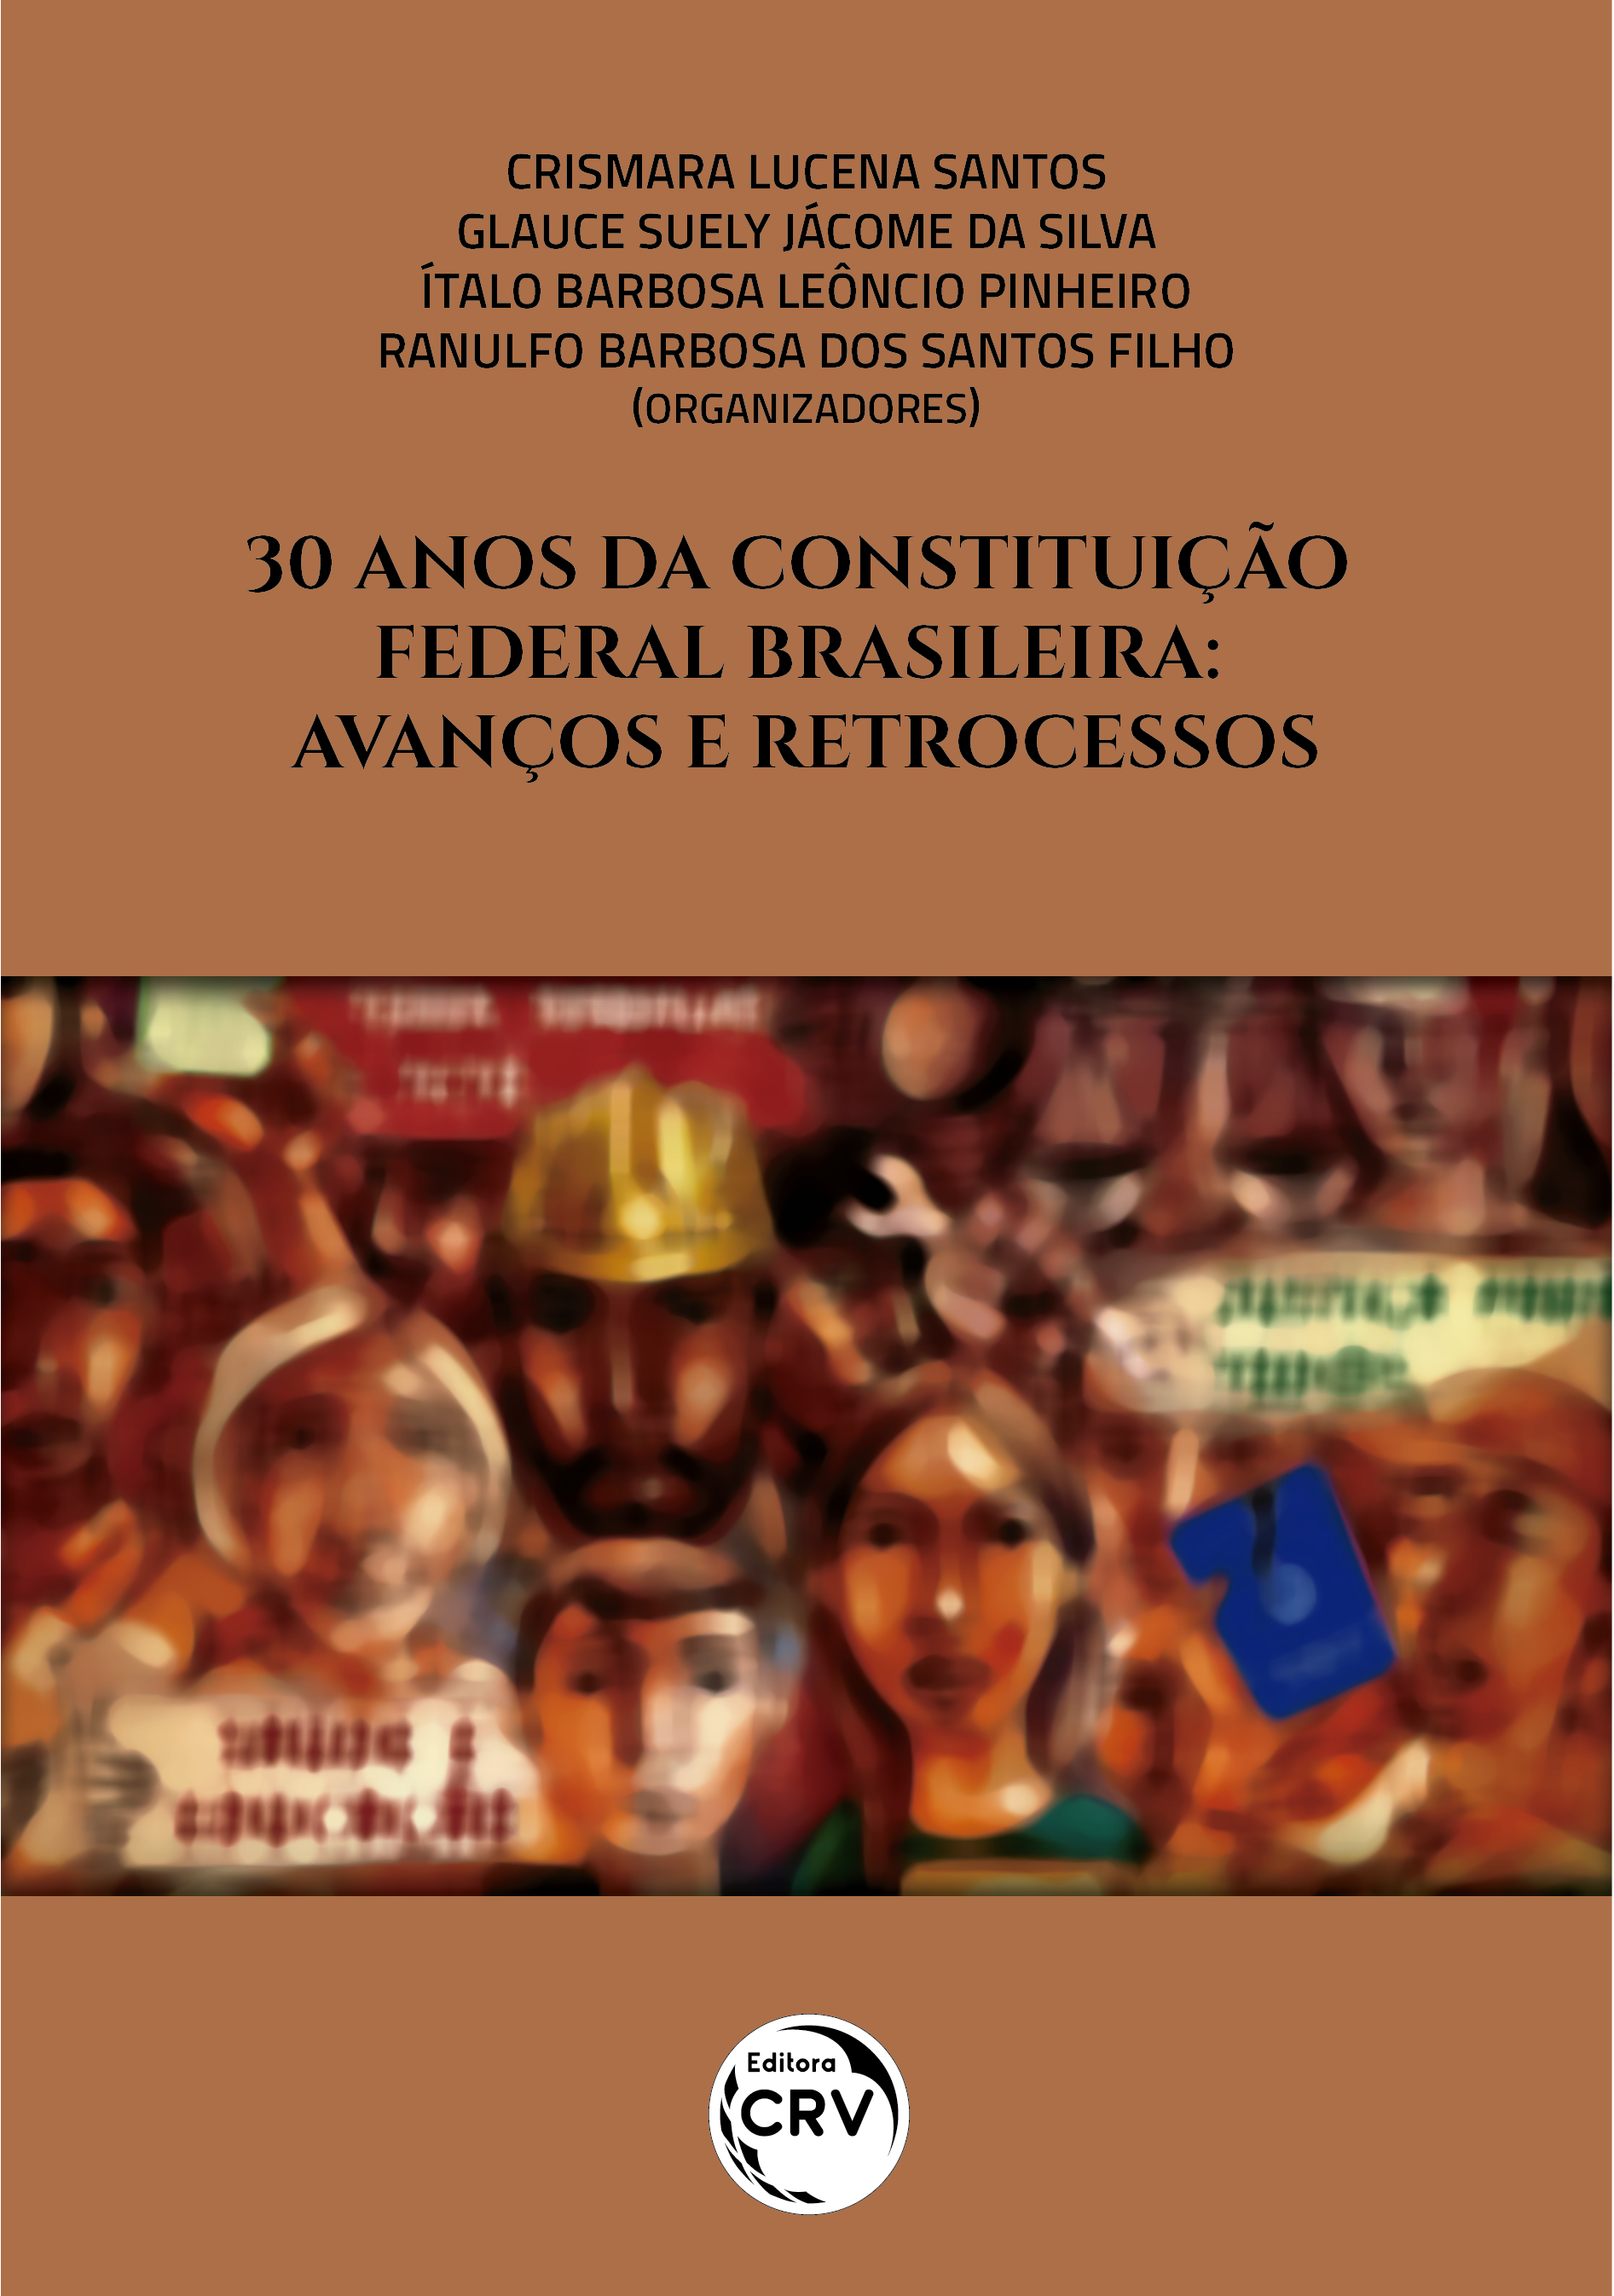 30 ANOS DA CONSTITUIÇÃO FEDERAL BRASILEIRA:<br> avanços e retrocessos